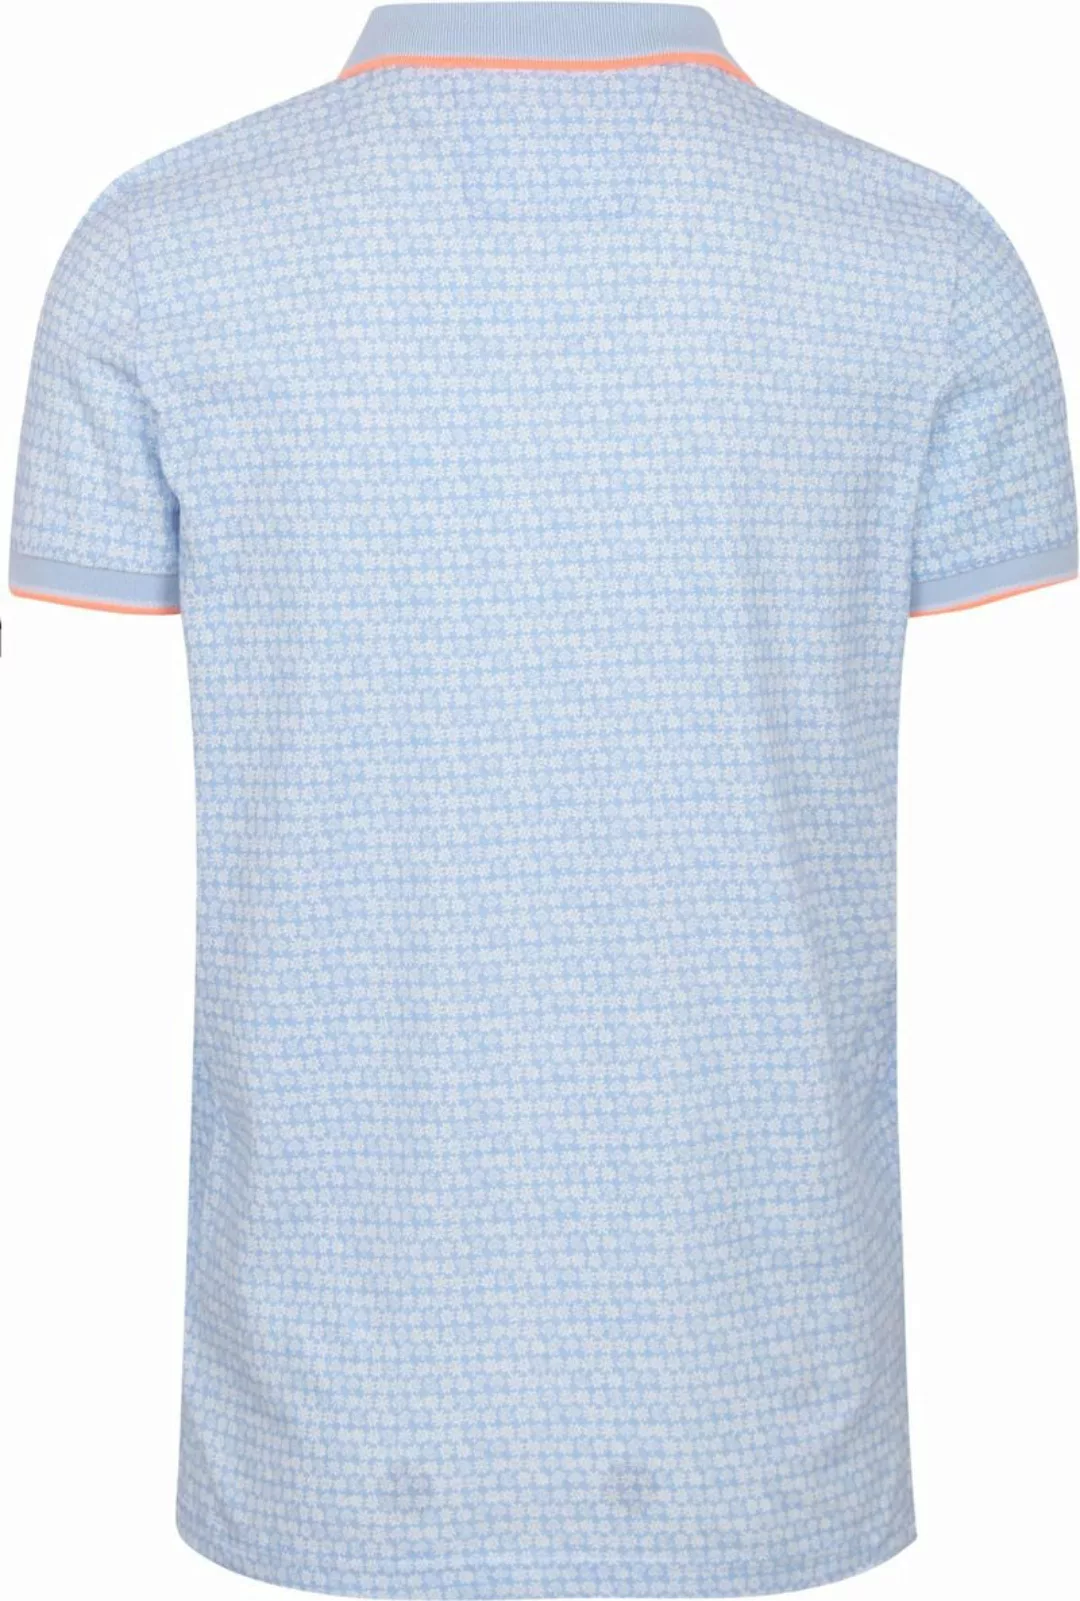 NZA Poloshirt Tristan Hellblau - Größe 3XL günstig online kaufen